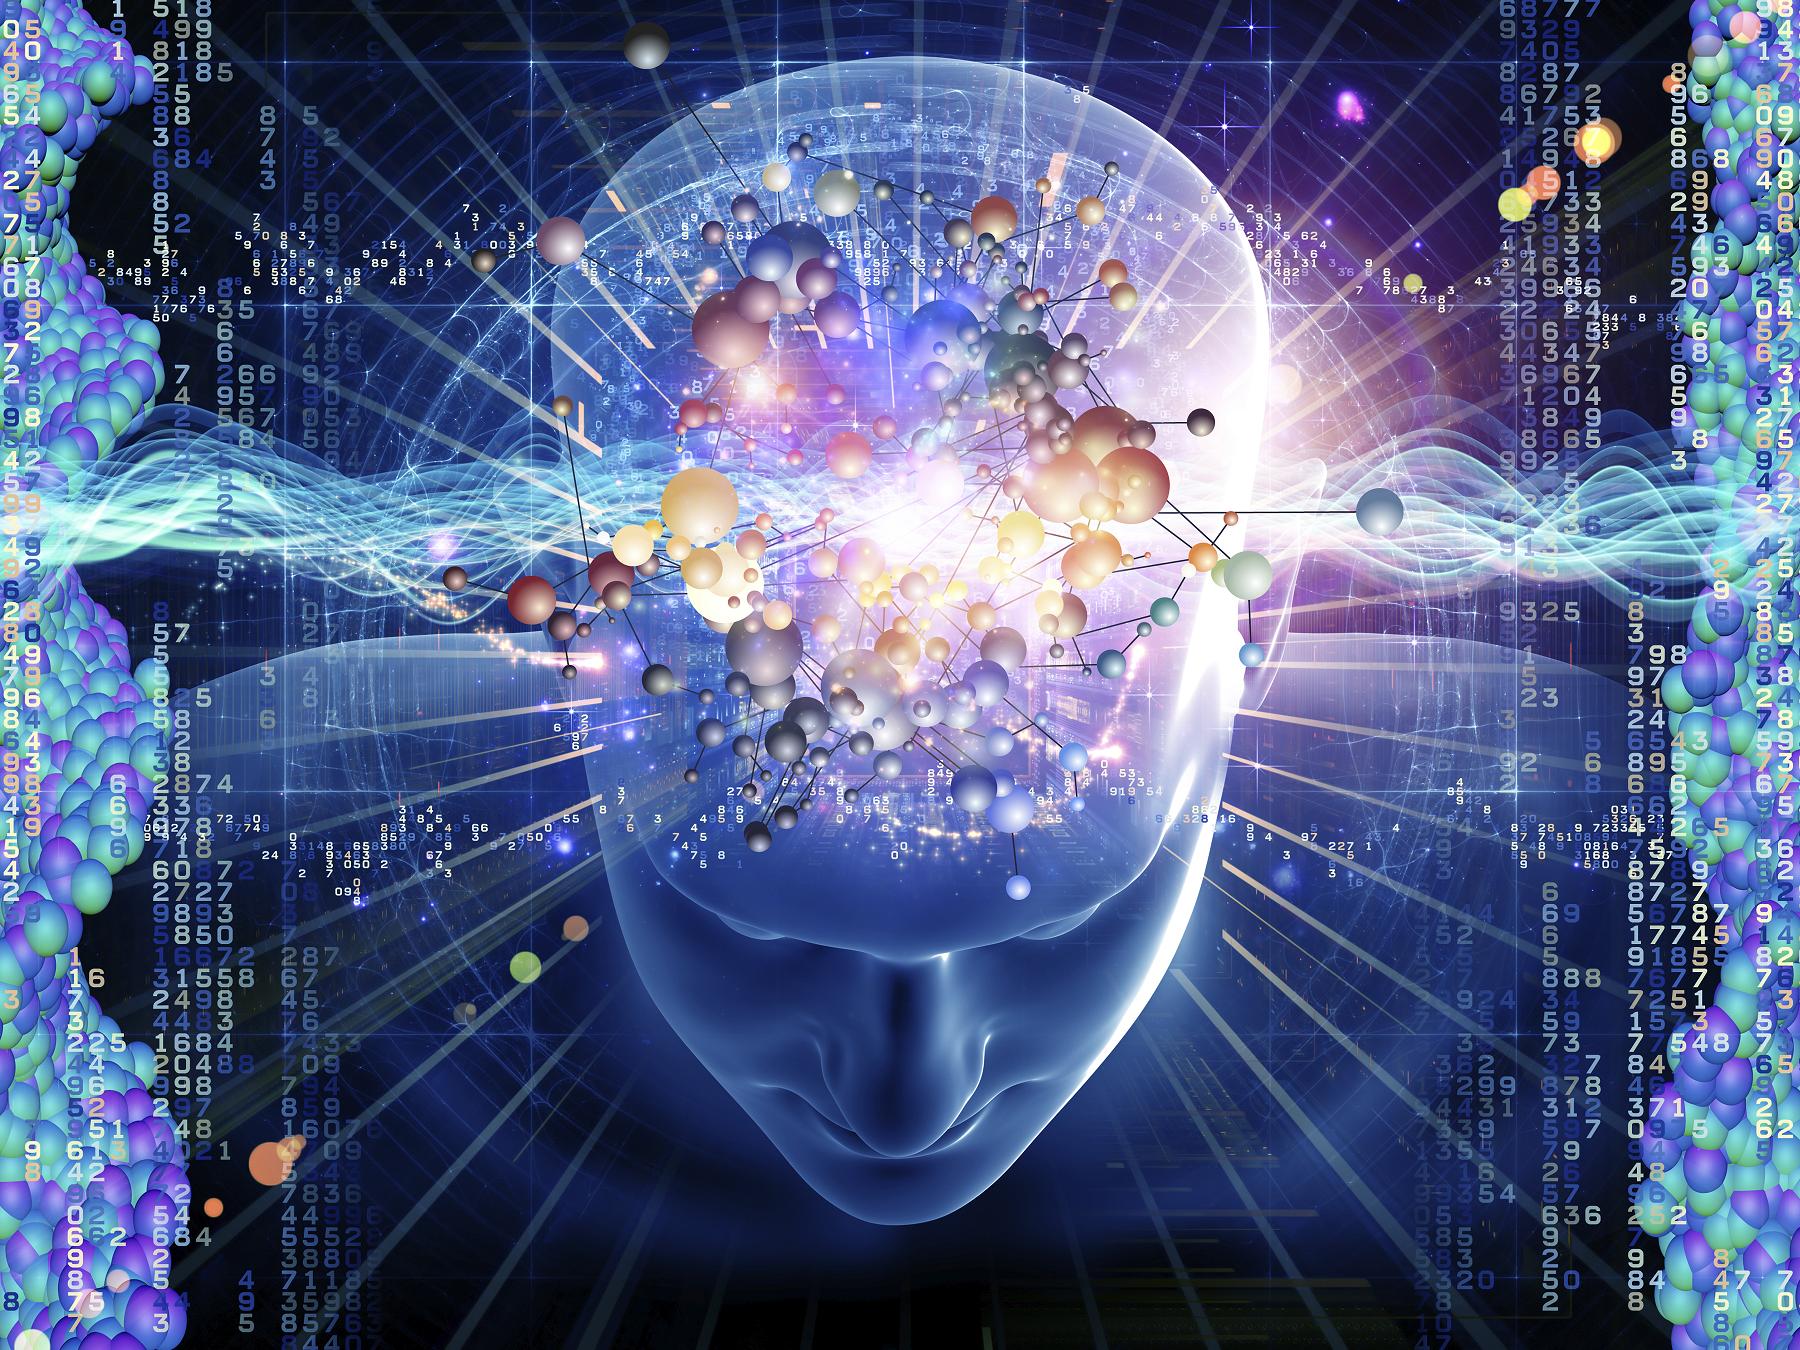 Artificial Intelligence v Consciousness